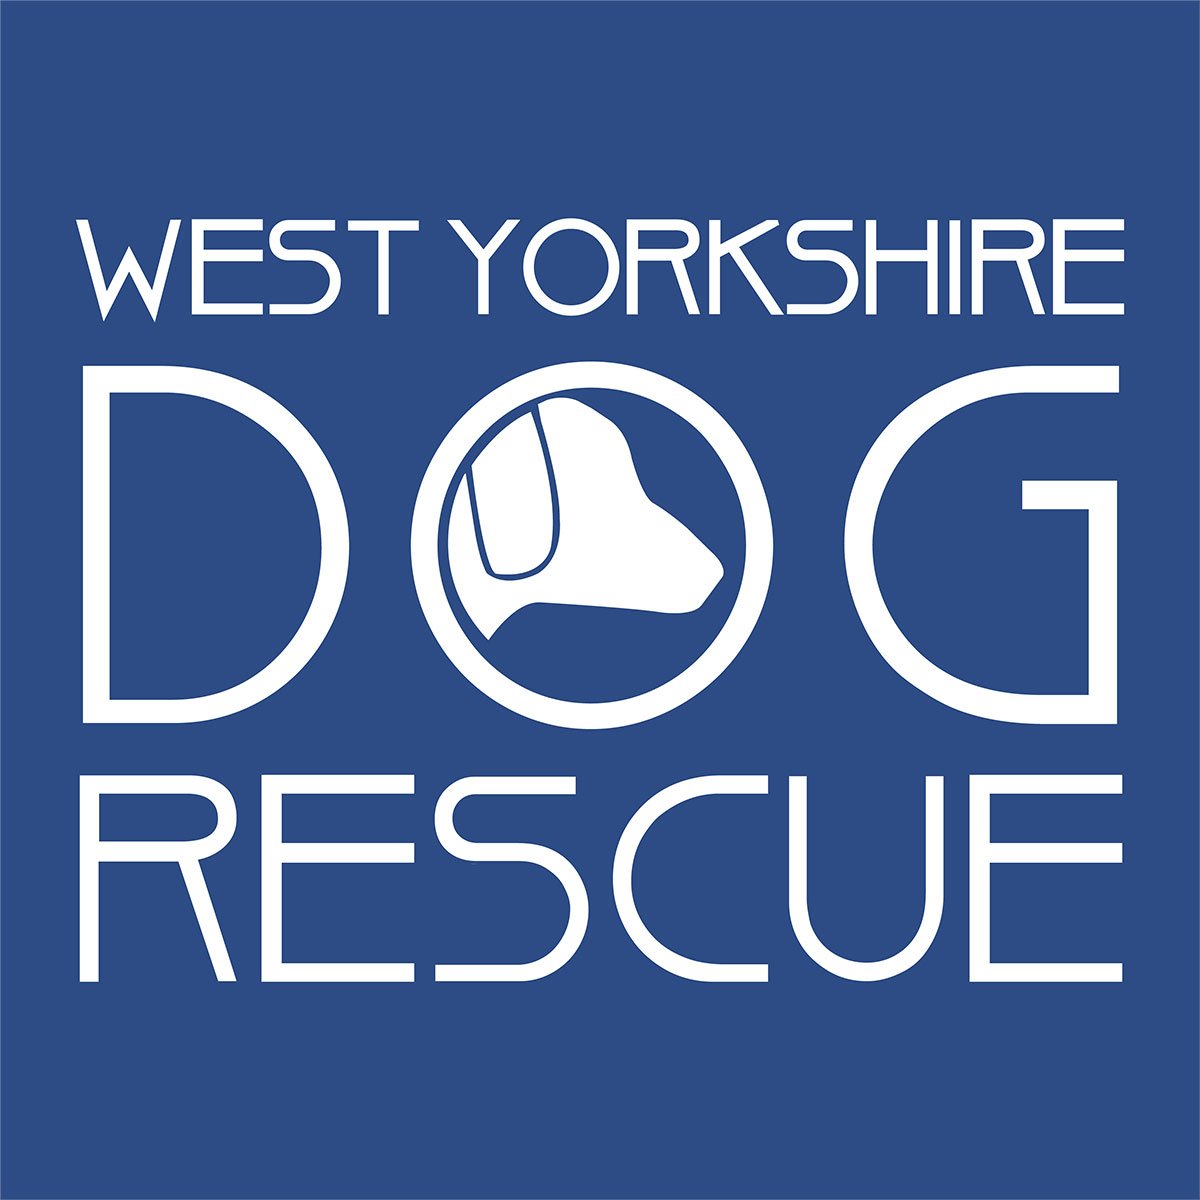 West Yorkshire Dog Rescue.jpeg